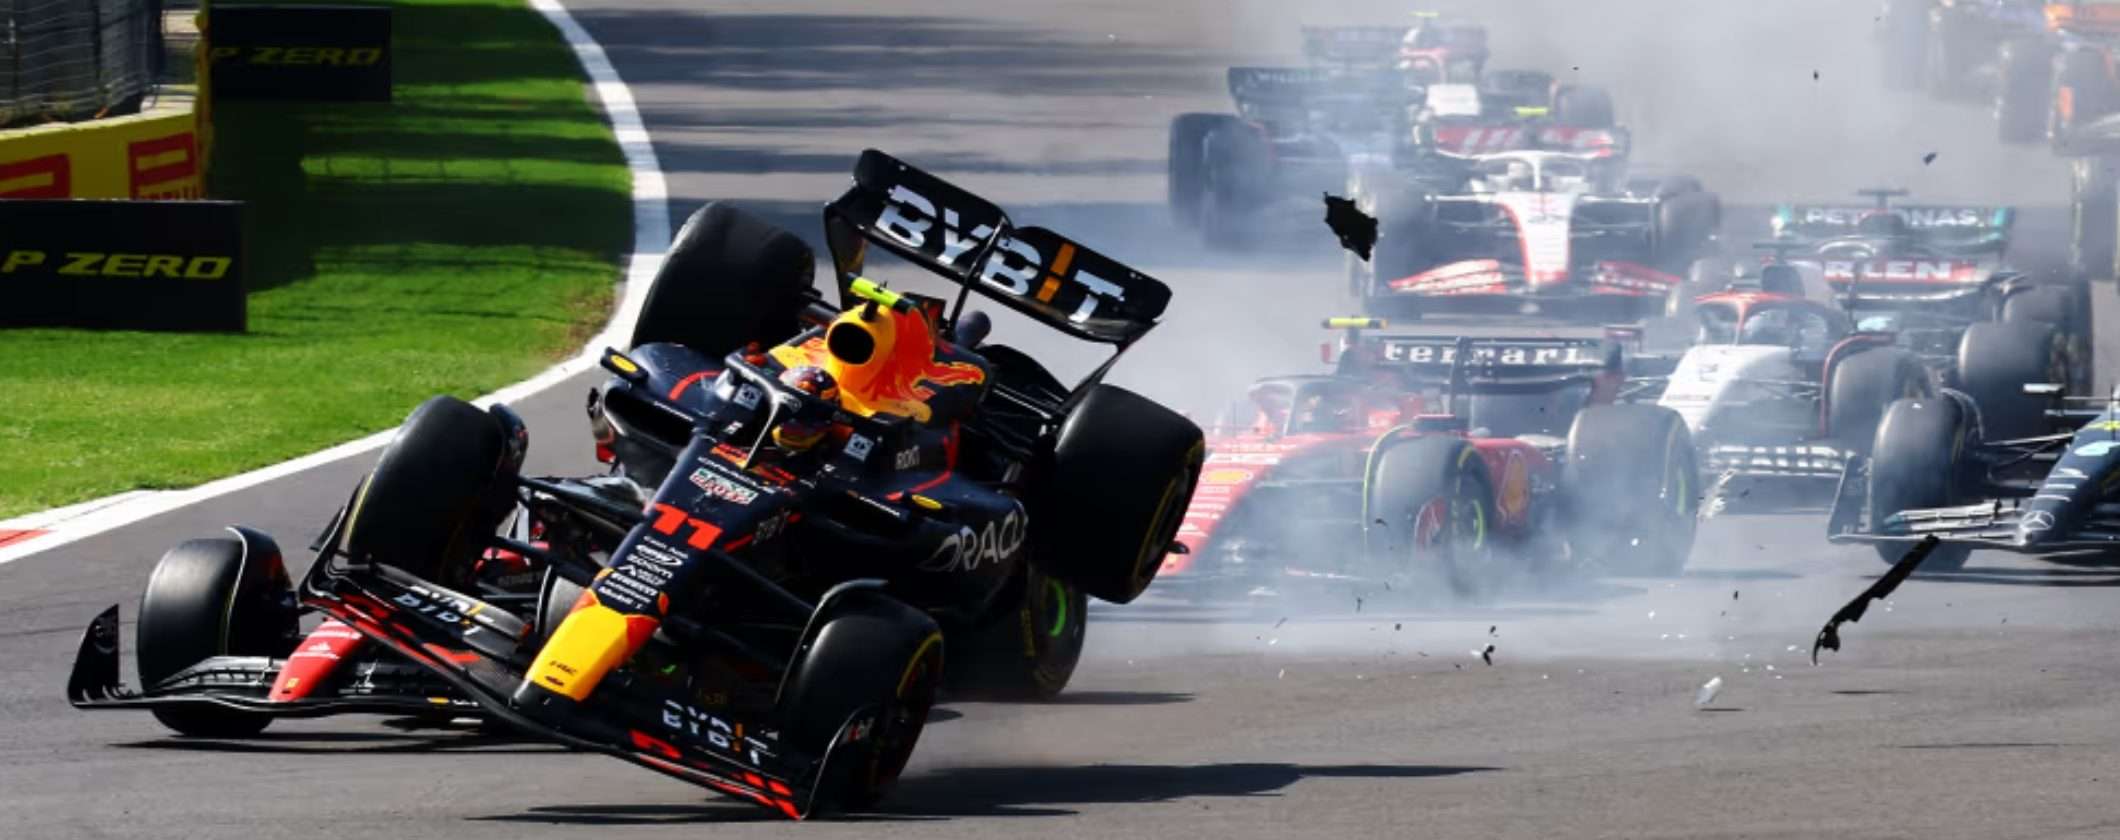 Formula 1 GP Brasile: come seguire le gare in streaming dall'estero